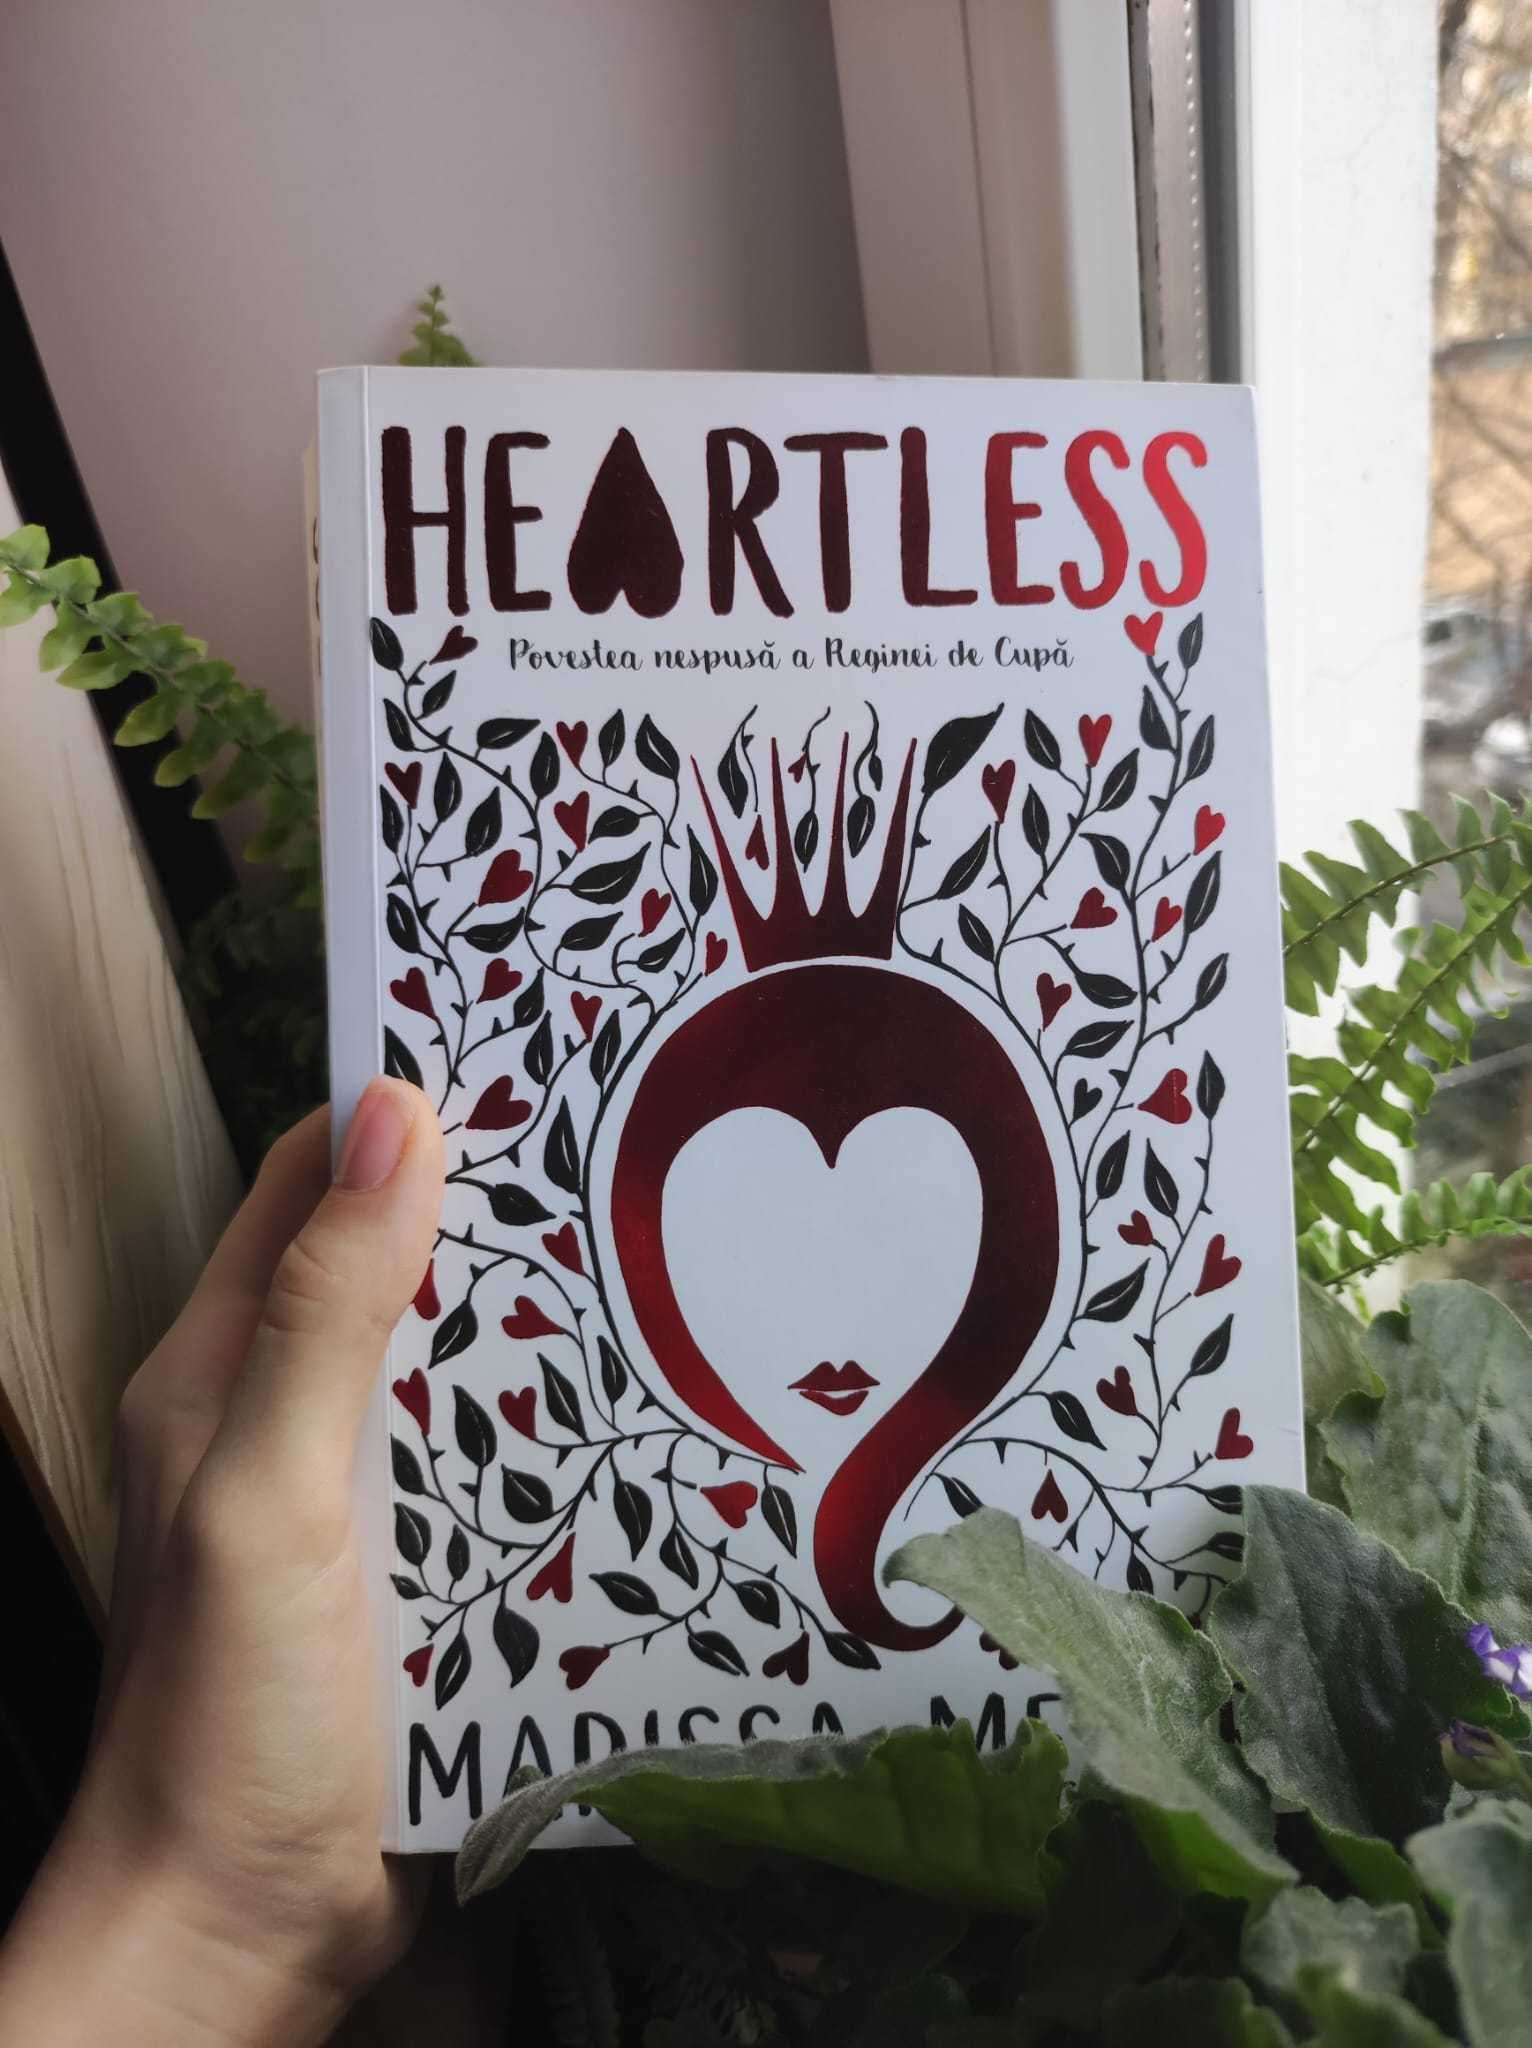 Romanul "Heartless" de Marissa Meyer